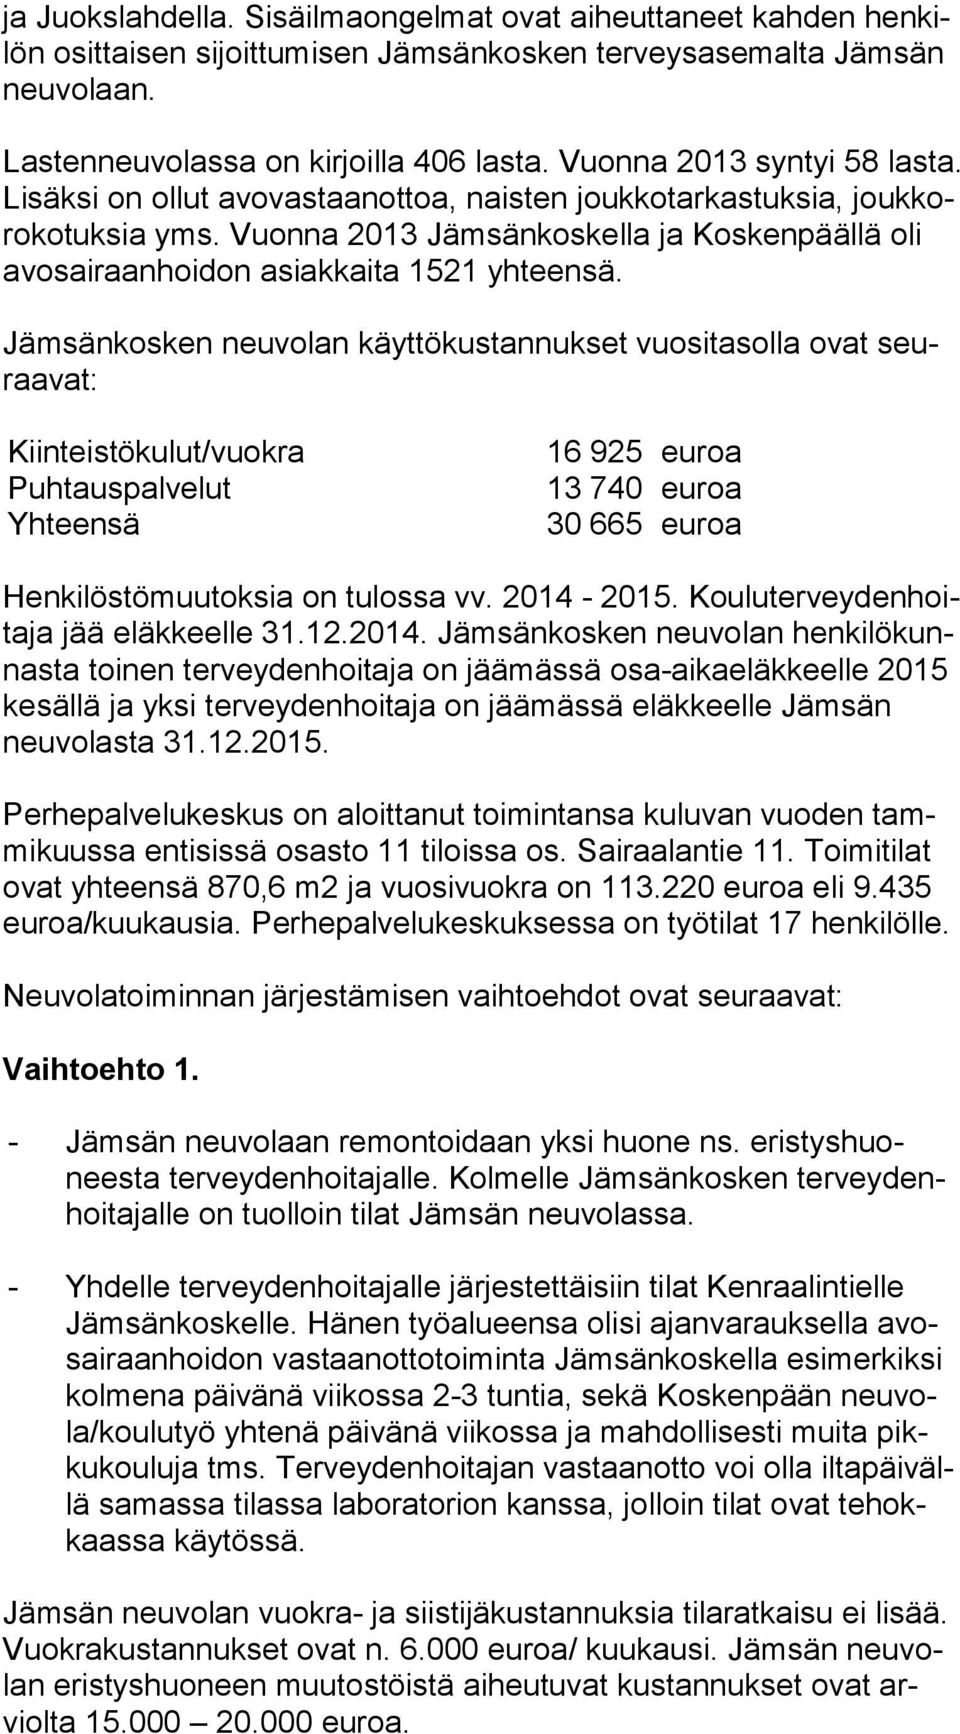 Vuonna 2013 Jämsänkoskella ja Kos ken pääl lä oli avosairaanhoidon asiakkaita 1521 yhteensä.